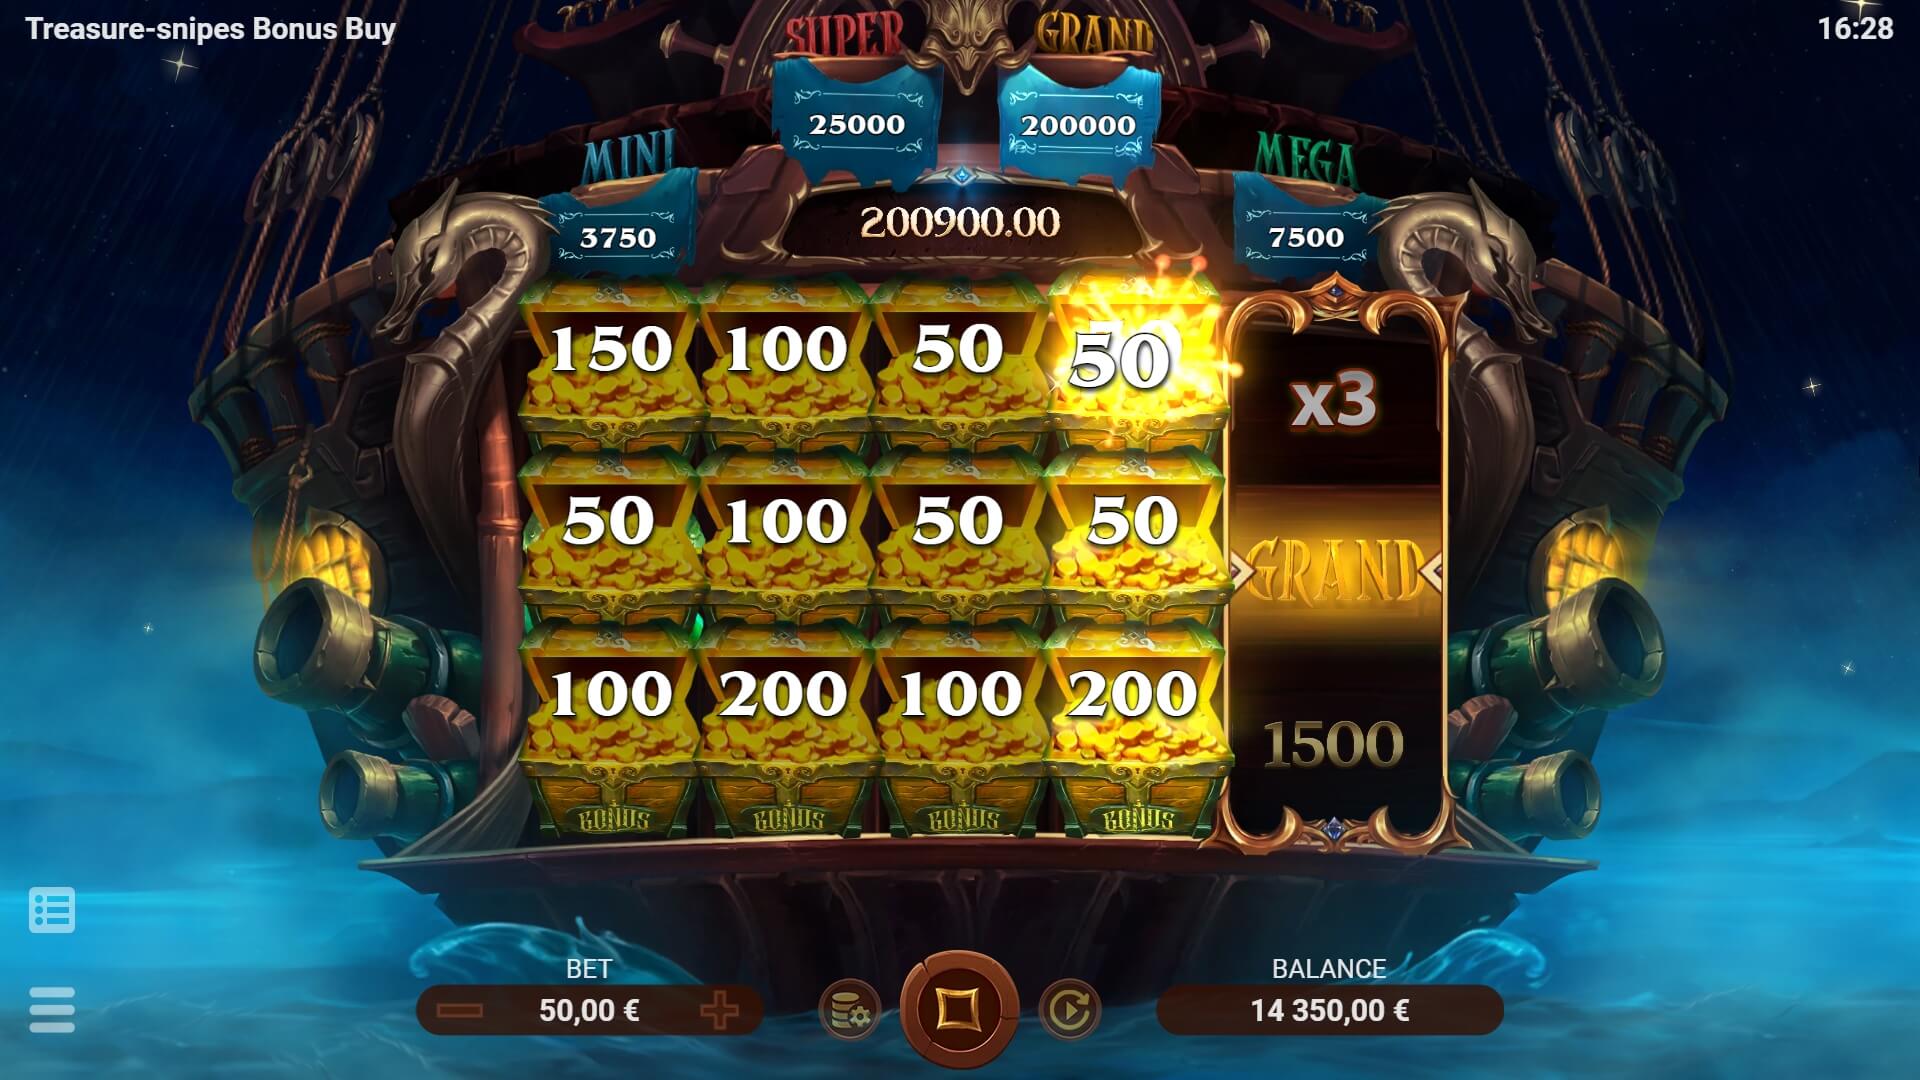 Treasure-snipes Bonus Buy Evoplay slotxo mobile